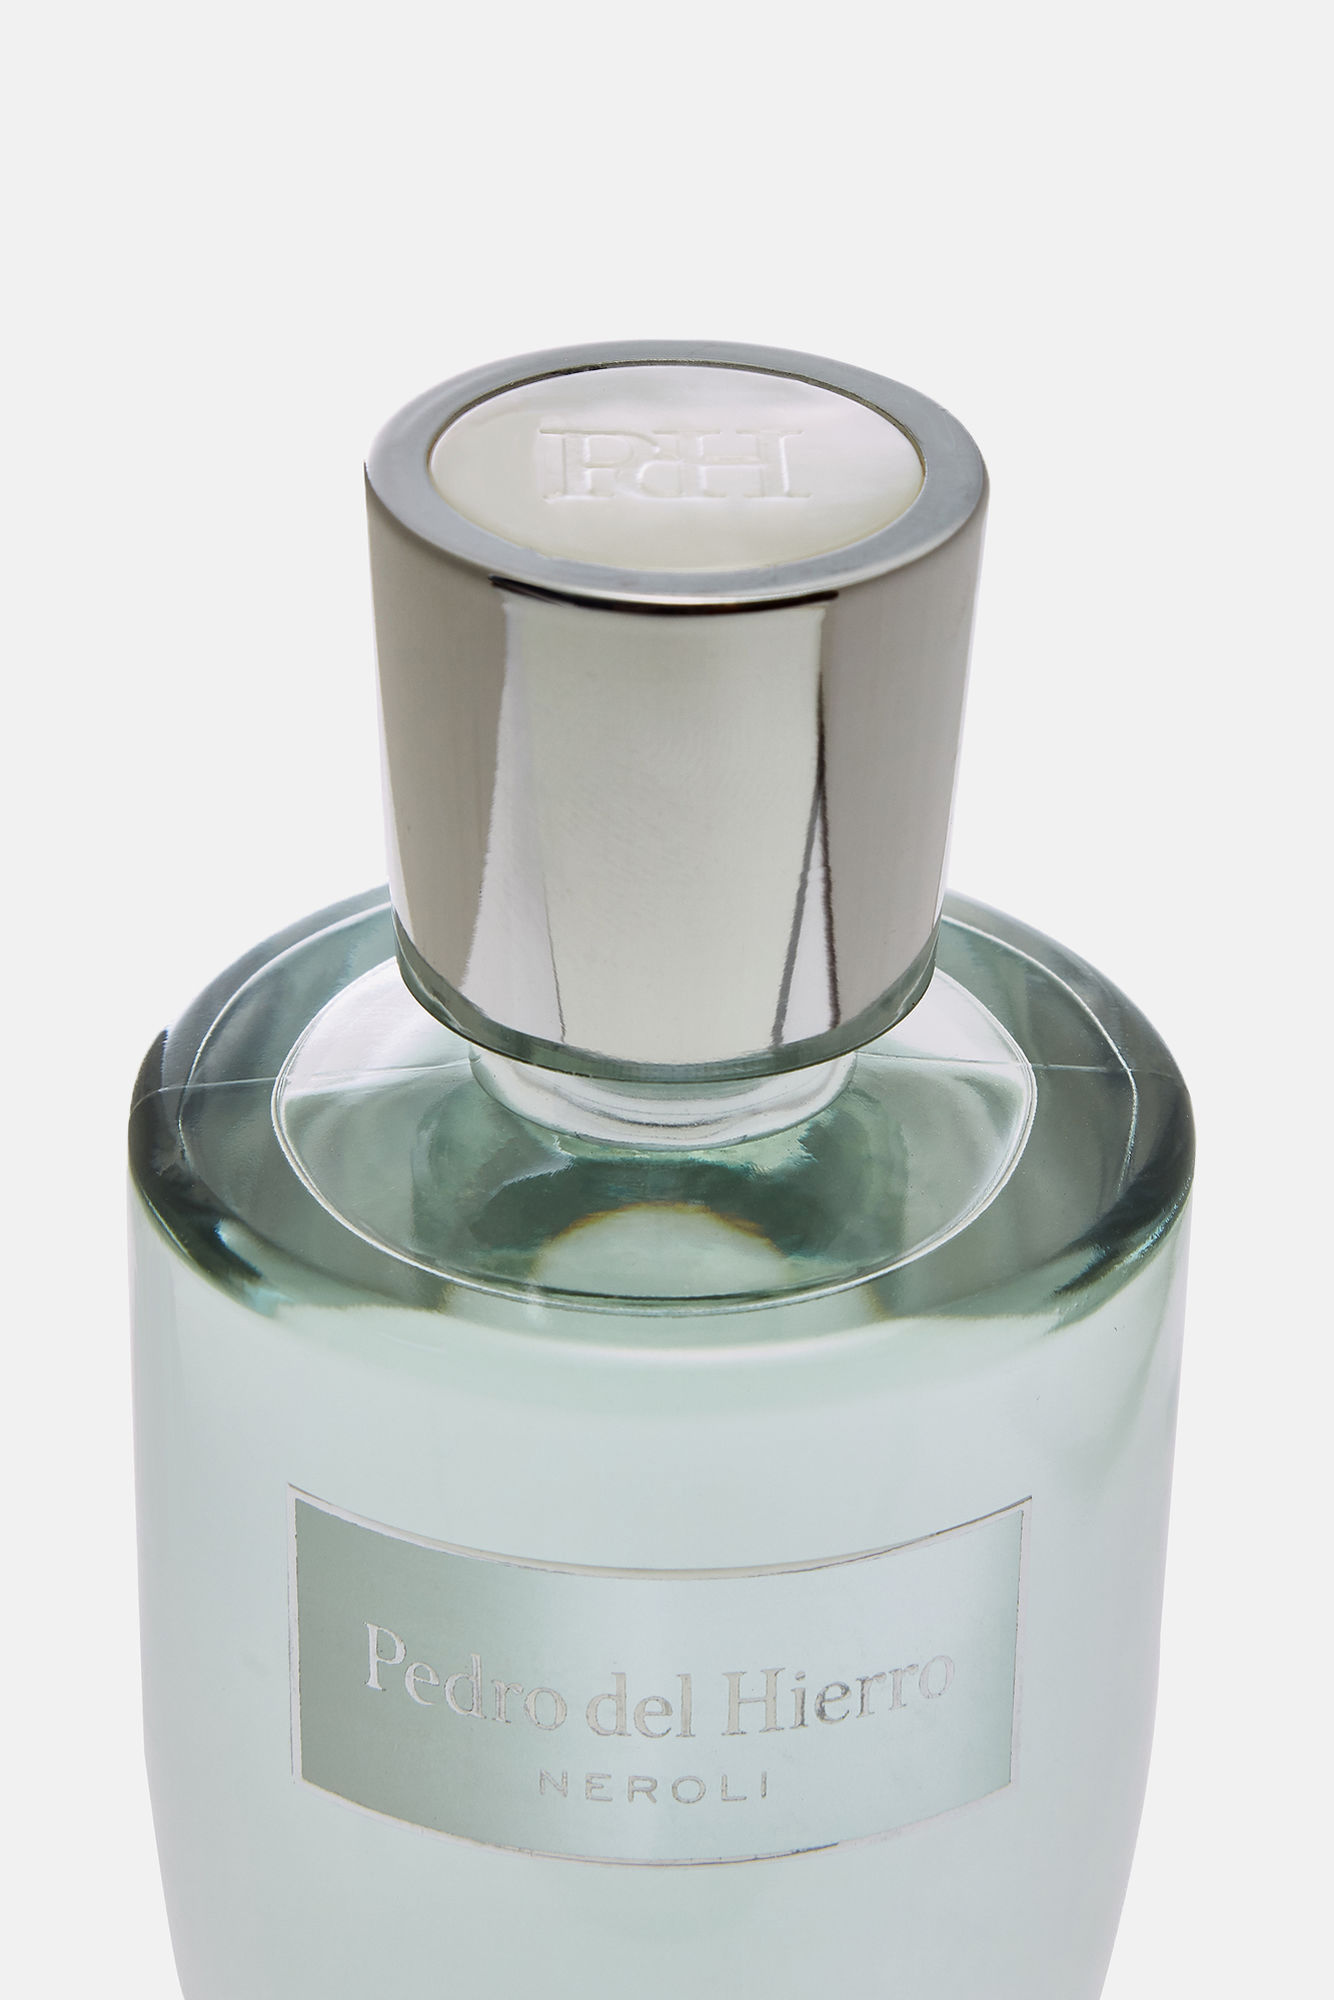 Neroli Pedro Del Hierro perfume - a fragrance for women 2018